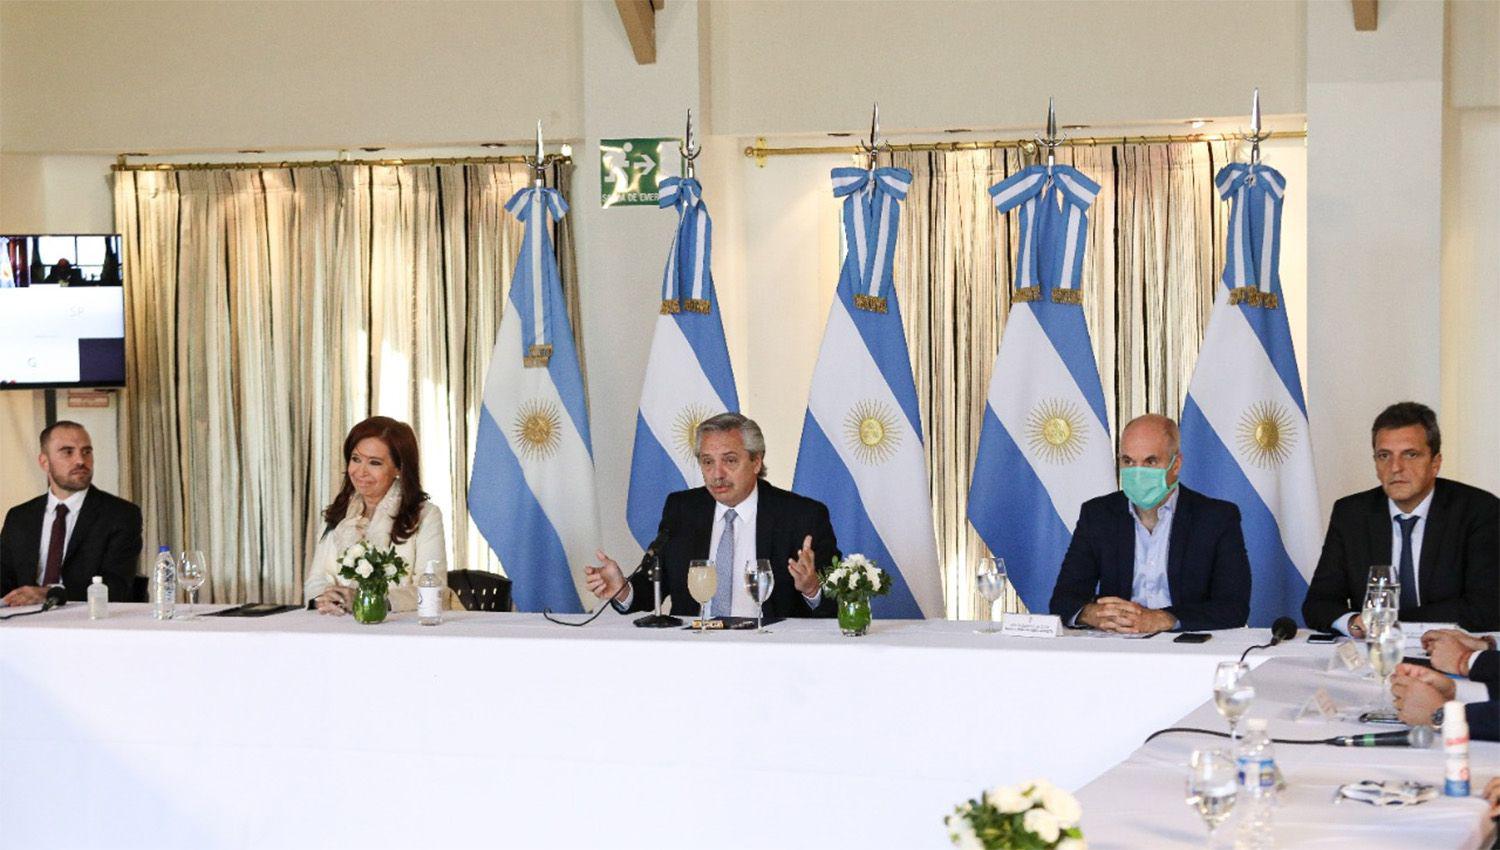 Massa- Argentina le mostroacute al mundo que toda la dirigencia asume responsablemente la deuda